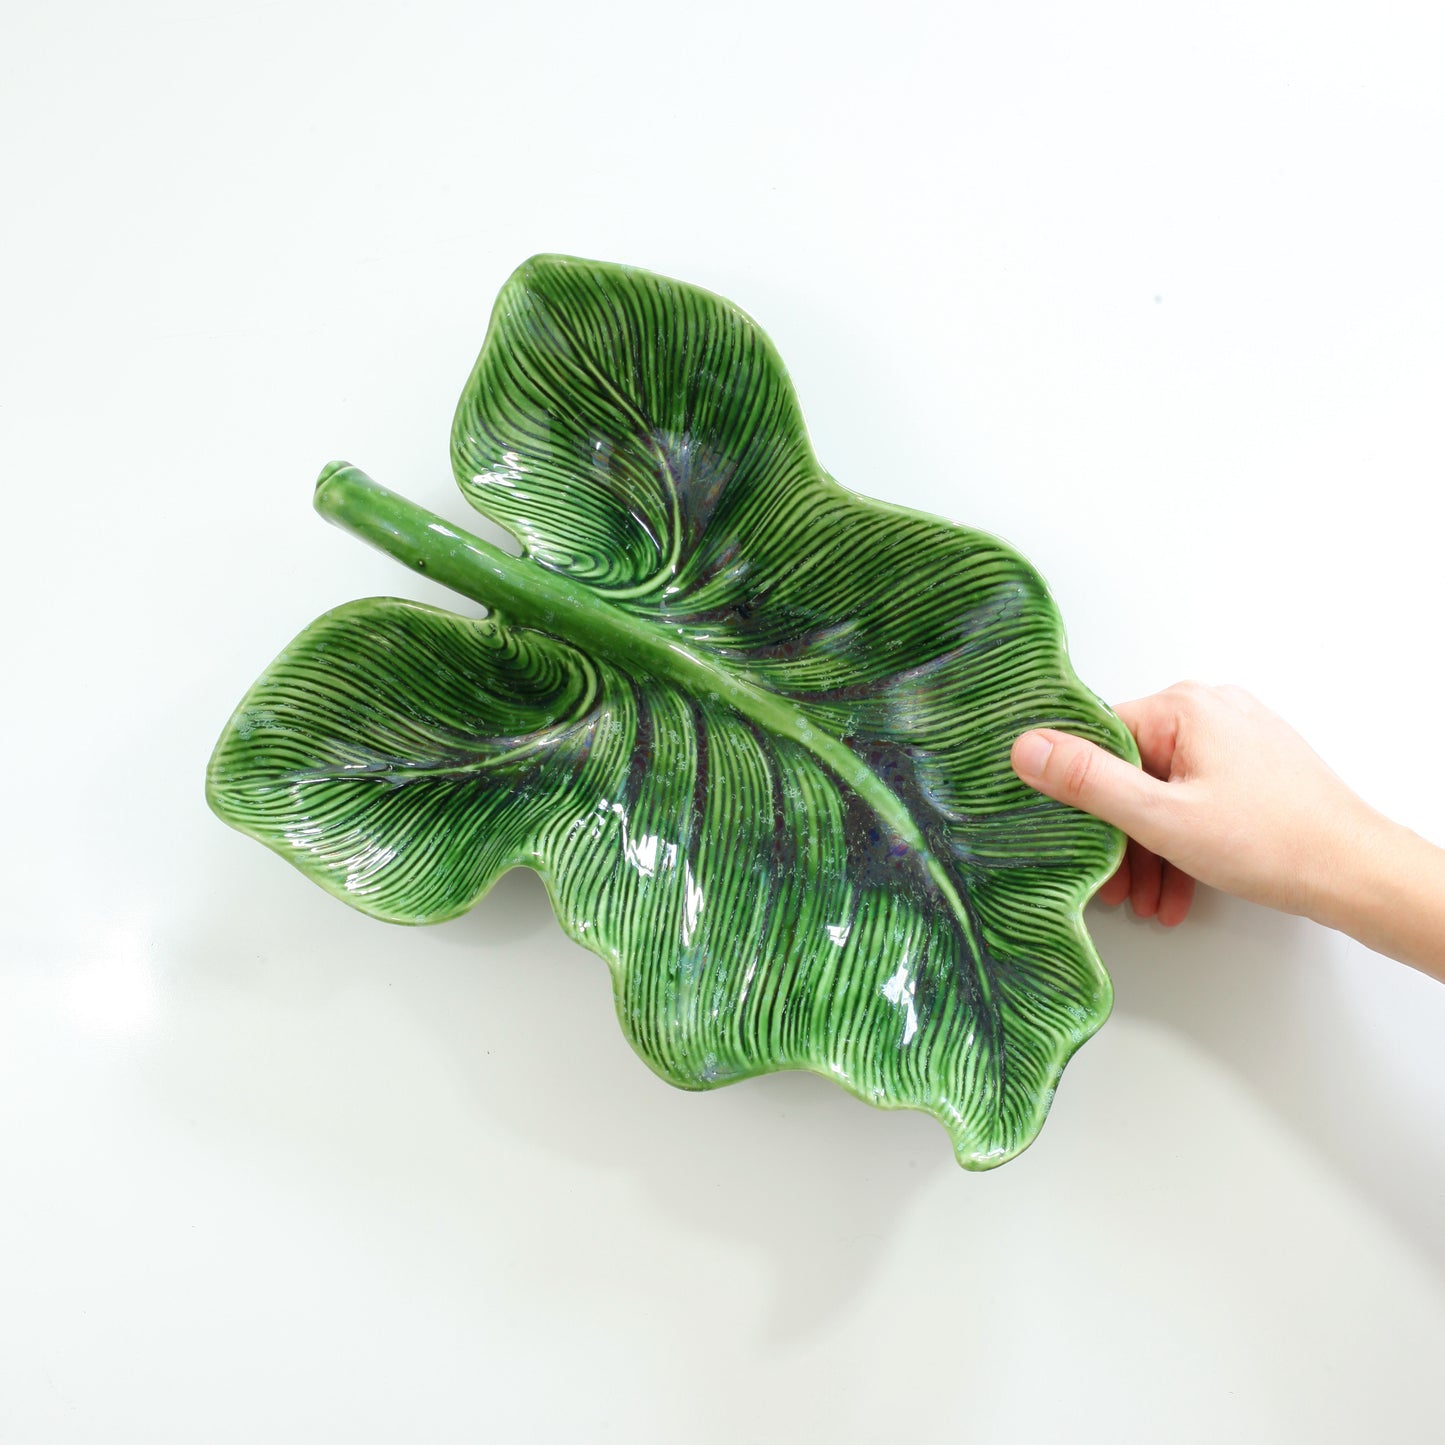 SOLD - XL Mid Century Ceramic Caladium Leaf Dish